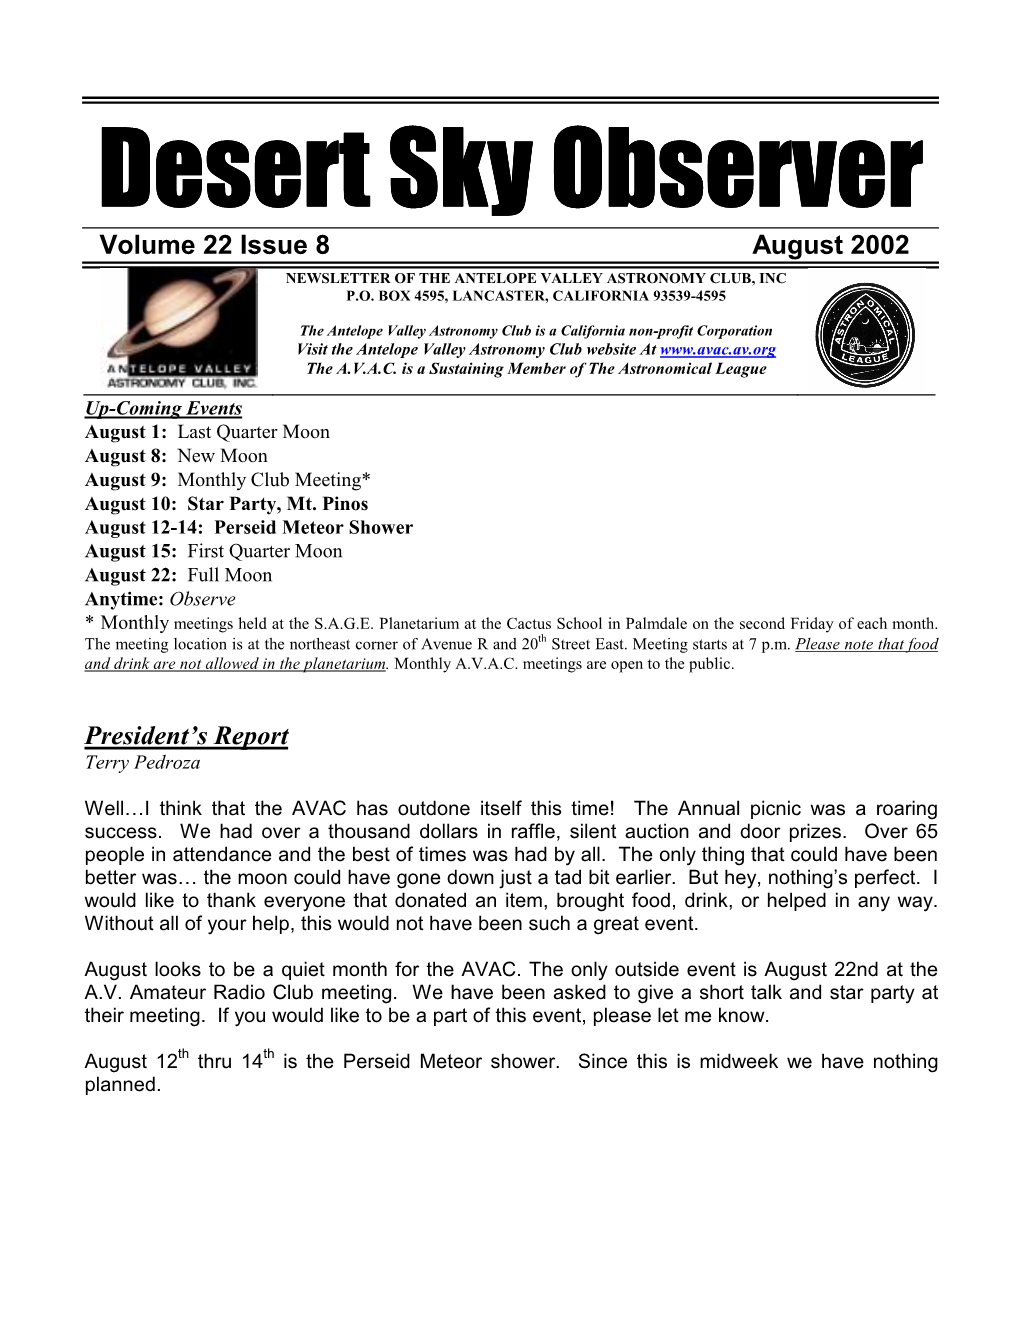 3 Desert Sky Observer * * * * * *